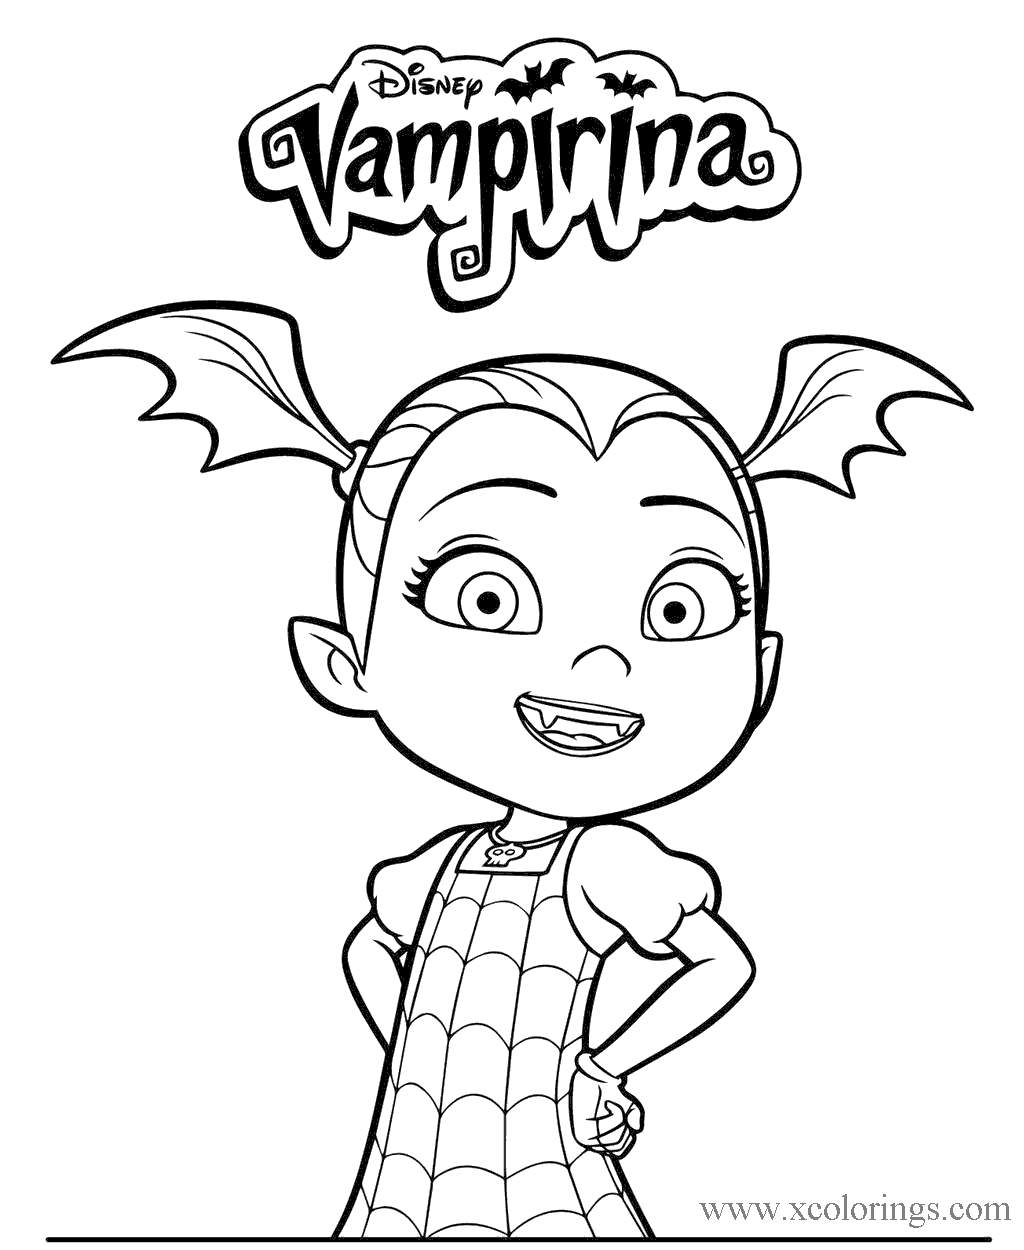 Free Disney Character Vampirina Coloring Pages printable